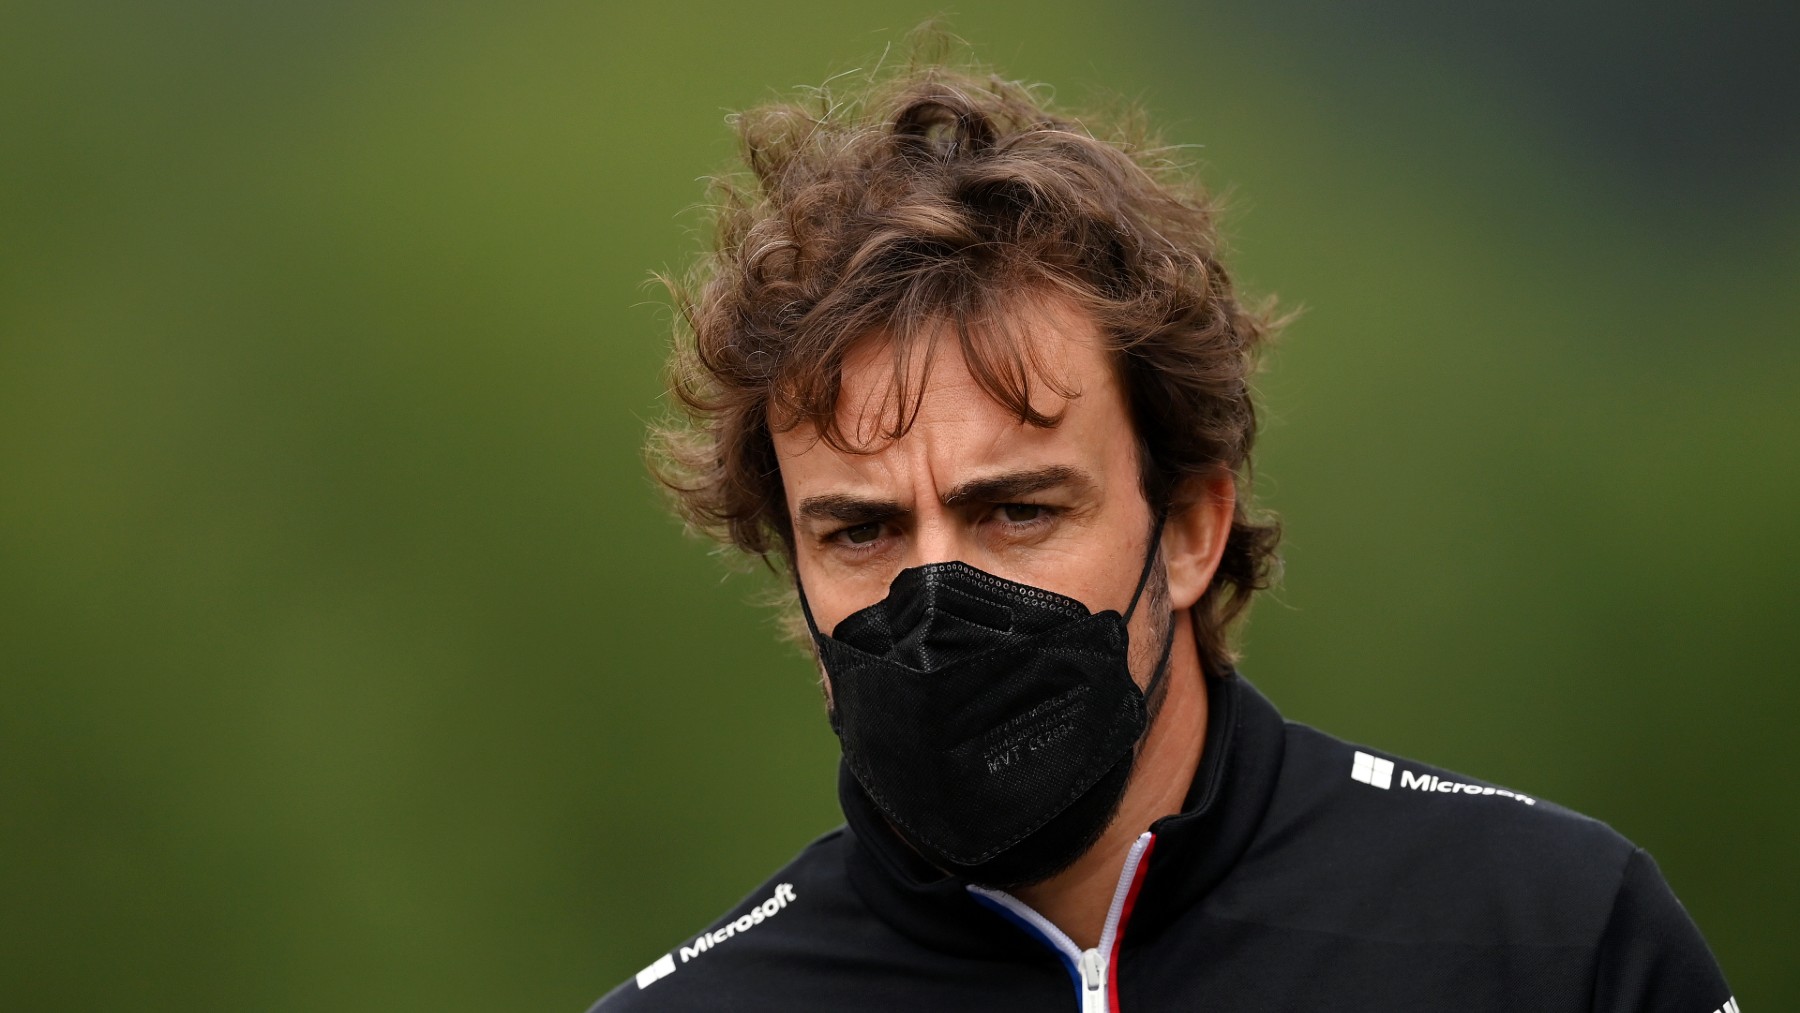 Fernando Alonso, en el Gran Premio de Bélgica. (AFP)